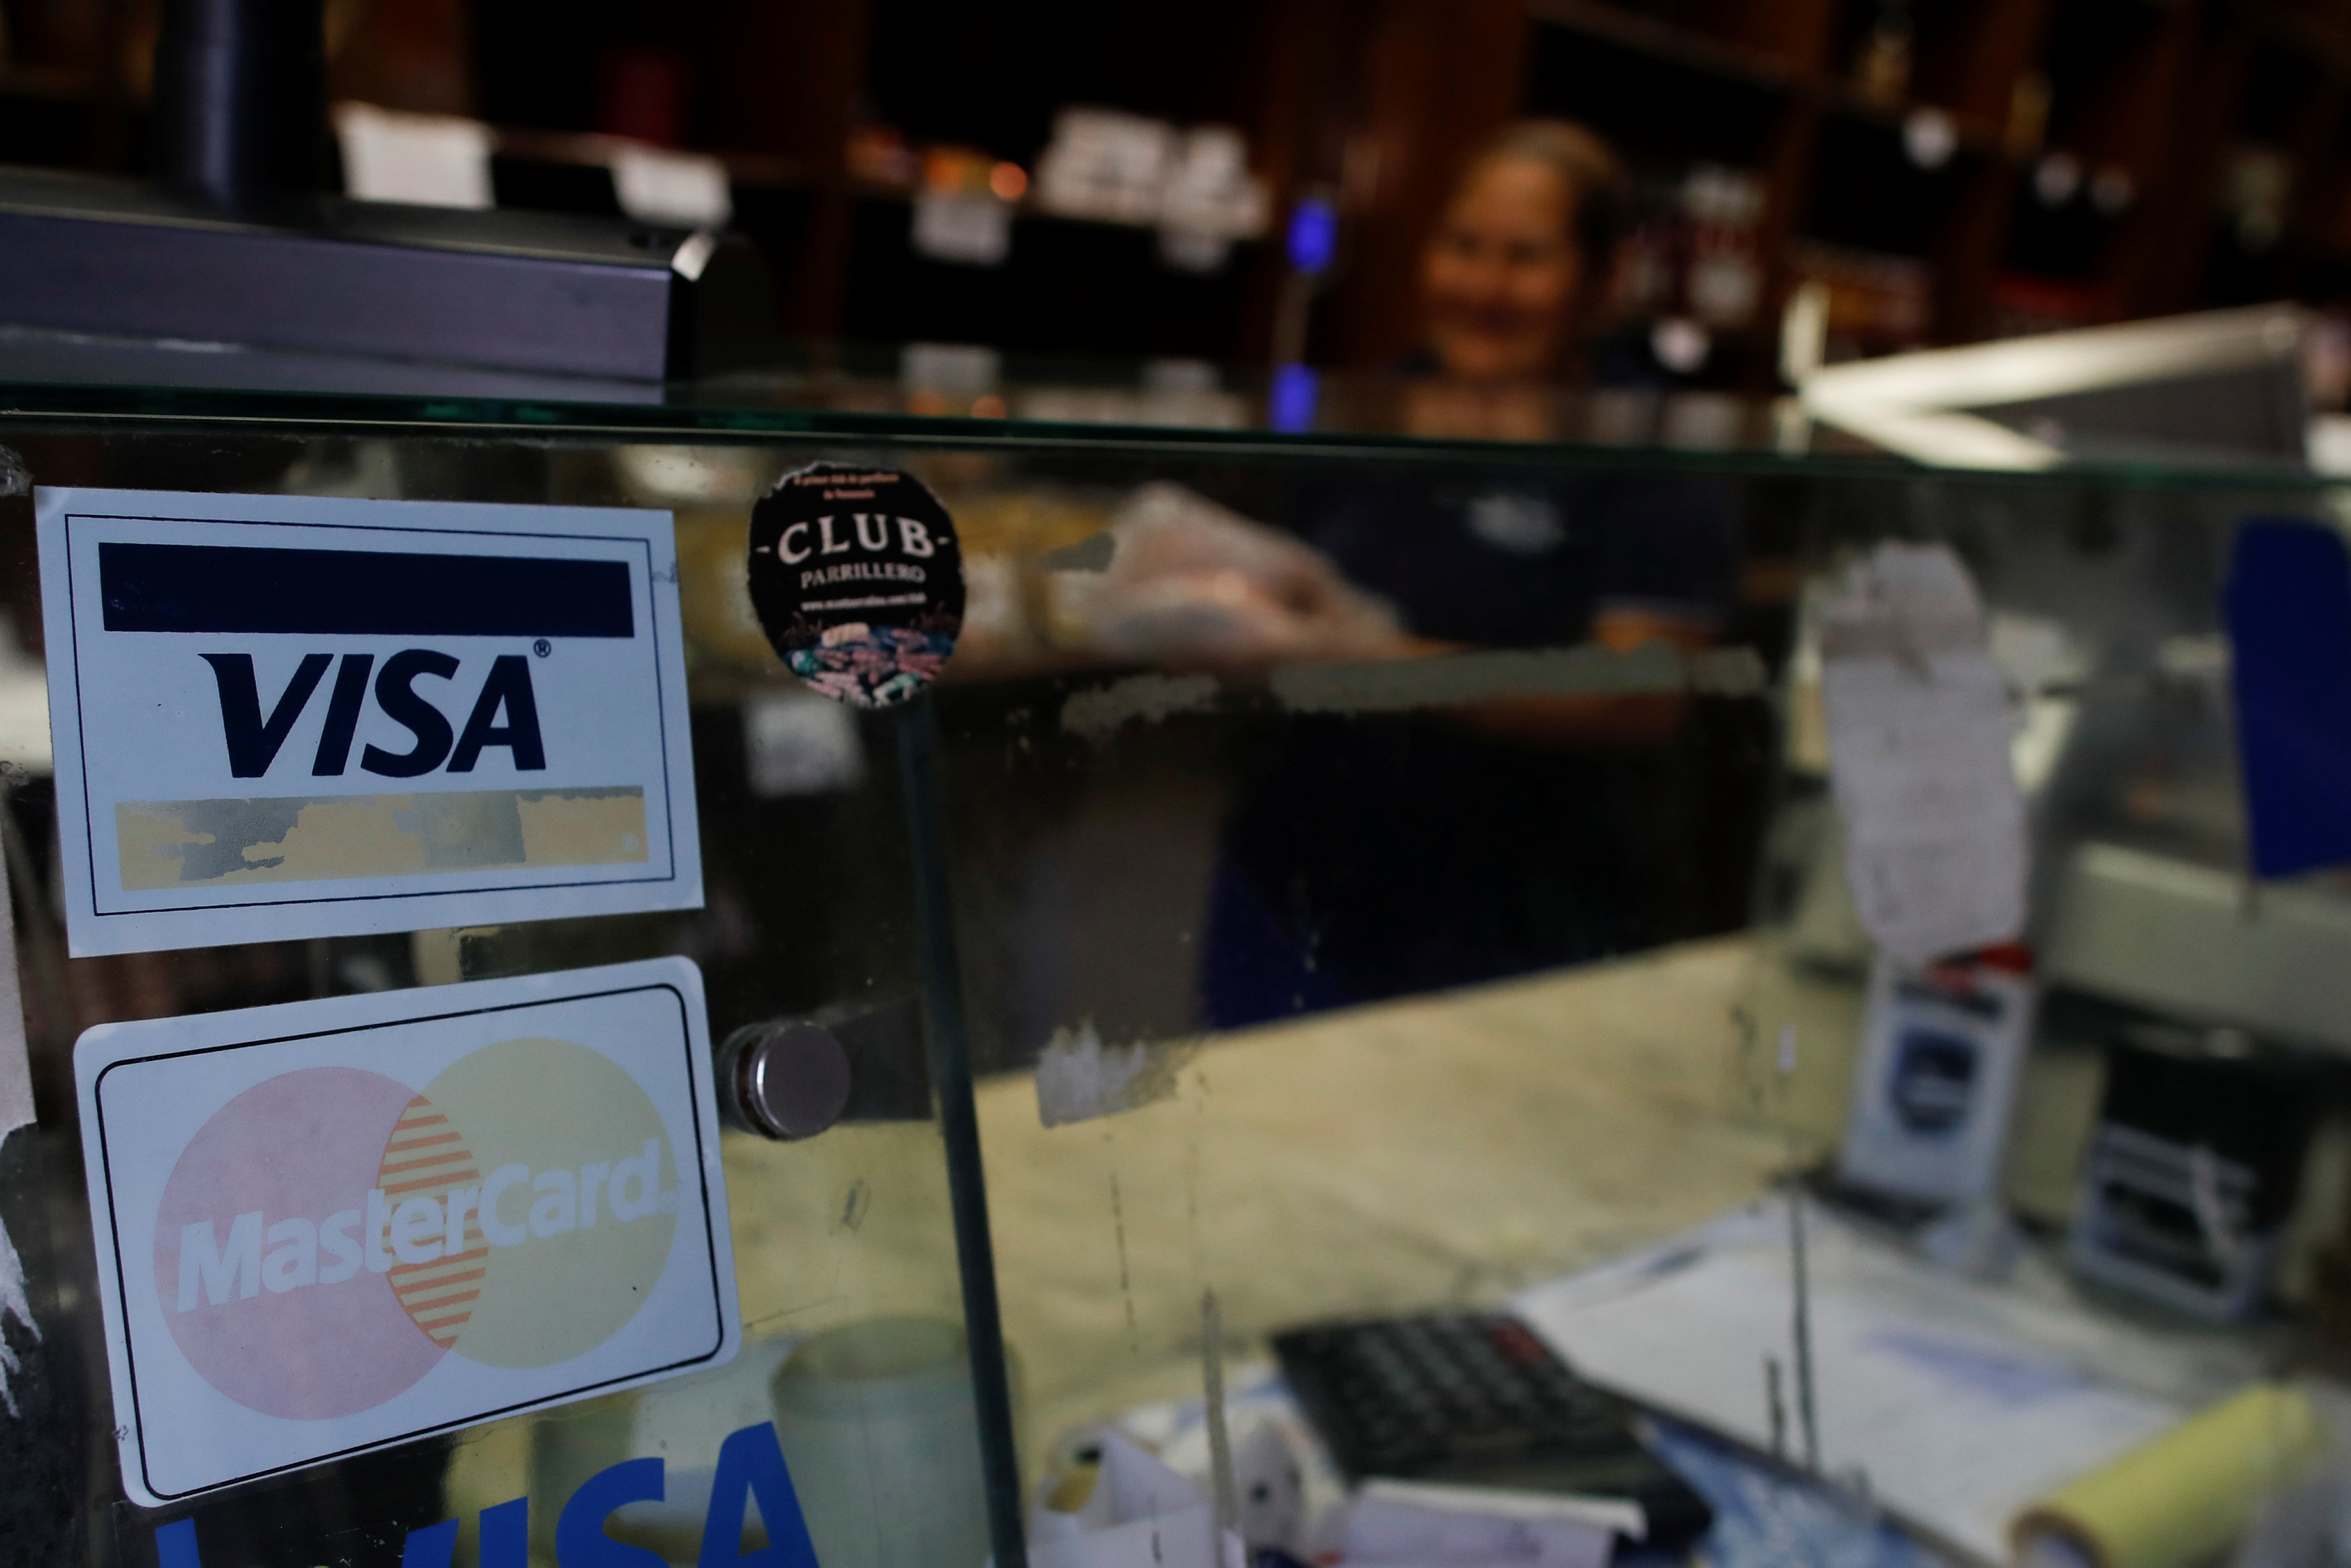 Posible suspensión de Visa y Mastercard tendría impacto limitado en Venezuela